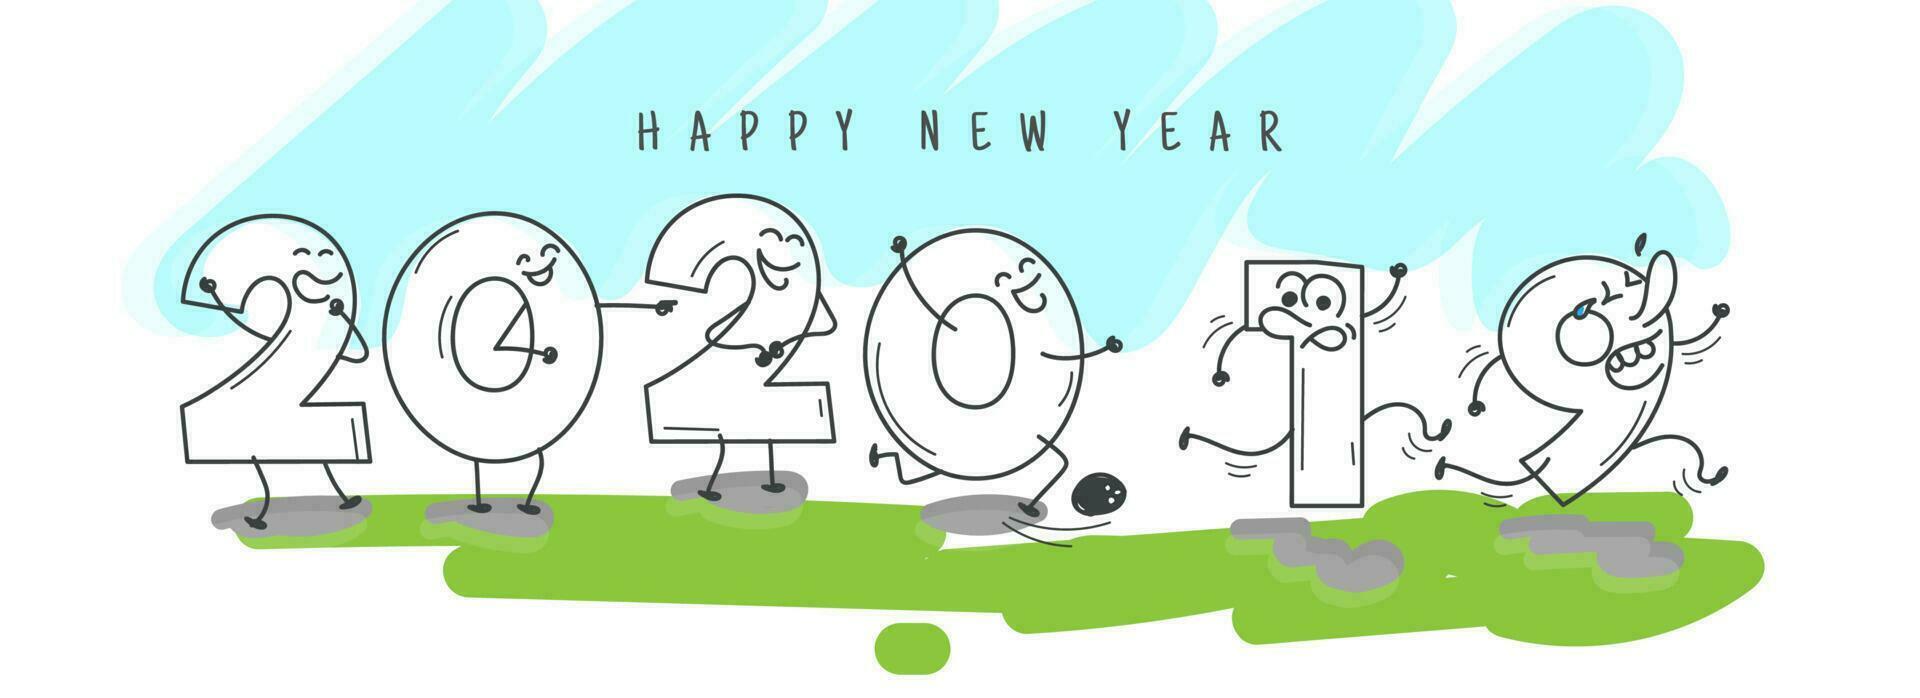 komisch Karikatur Nummer von 2020 herzlich willkommen glücklich Neu Jahr und gehen 2019 auf abstrakt Hintergrund. Header oder Banner Design. vektor